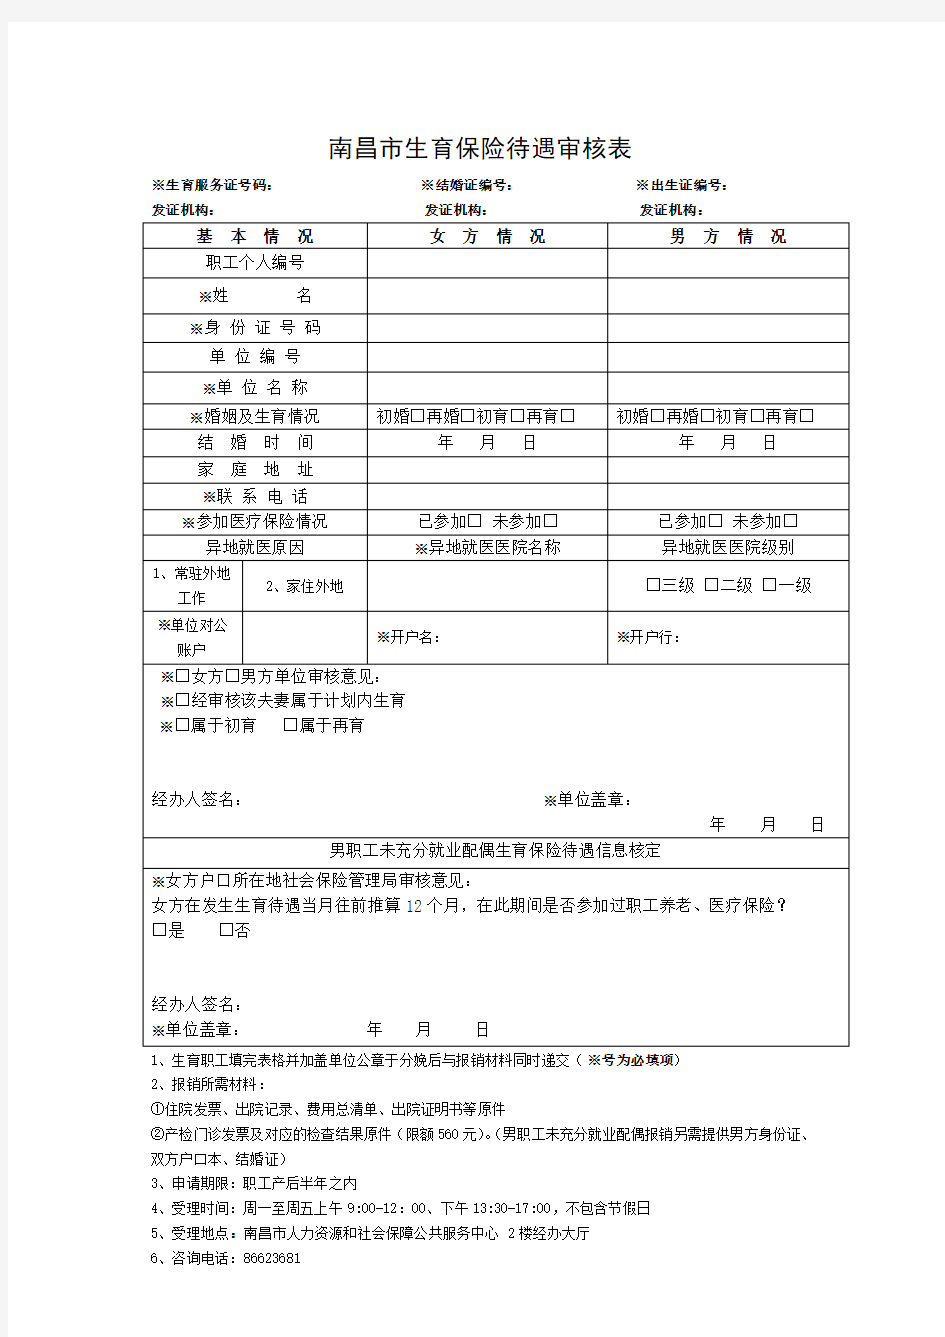 南昌市生育保险待遇审核表(三合一)及报销条件和材料